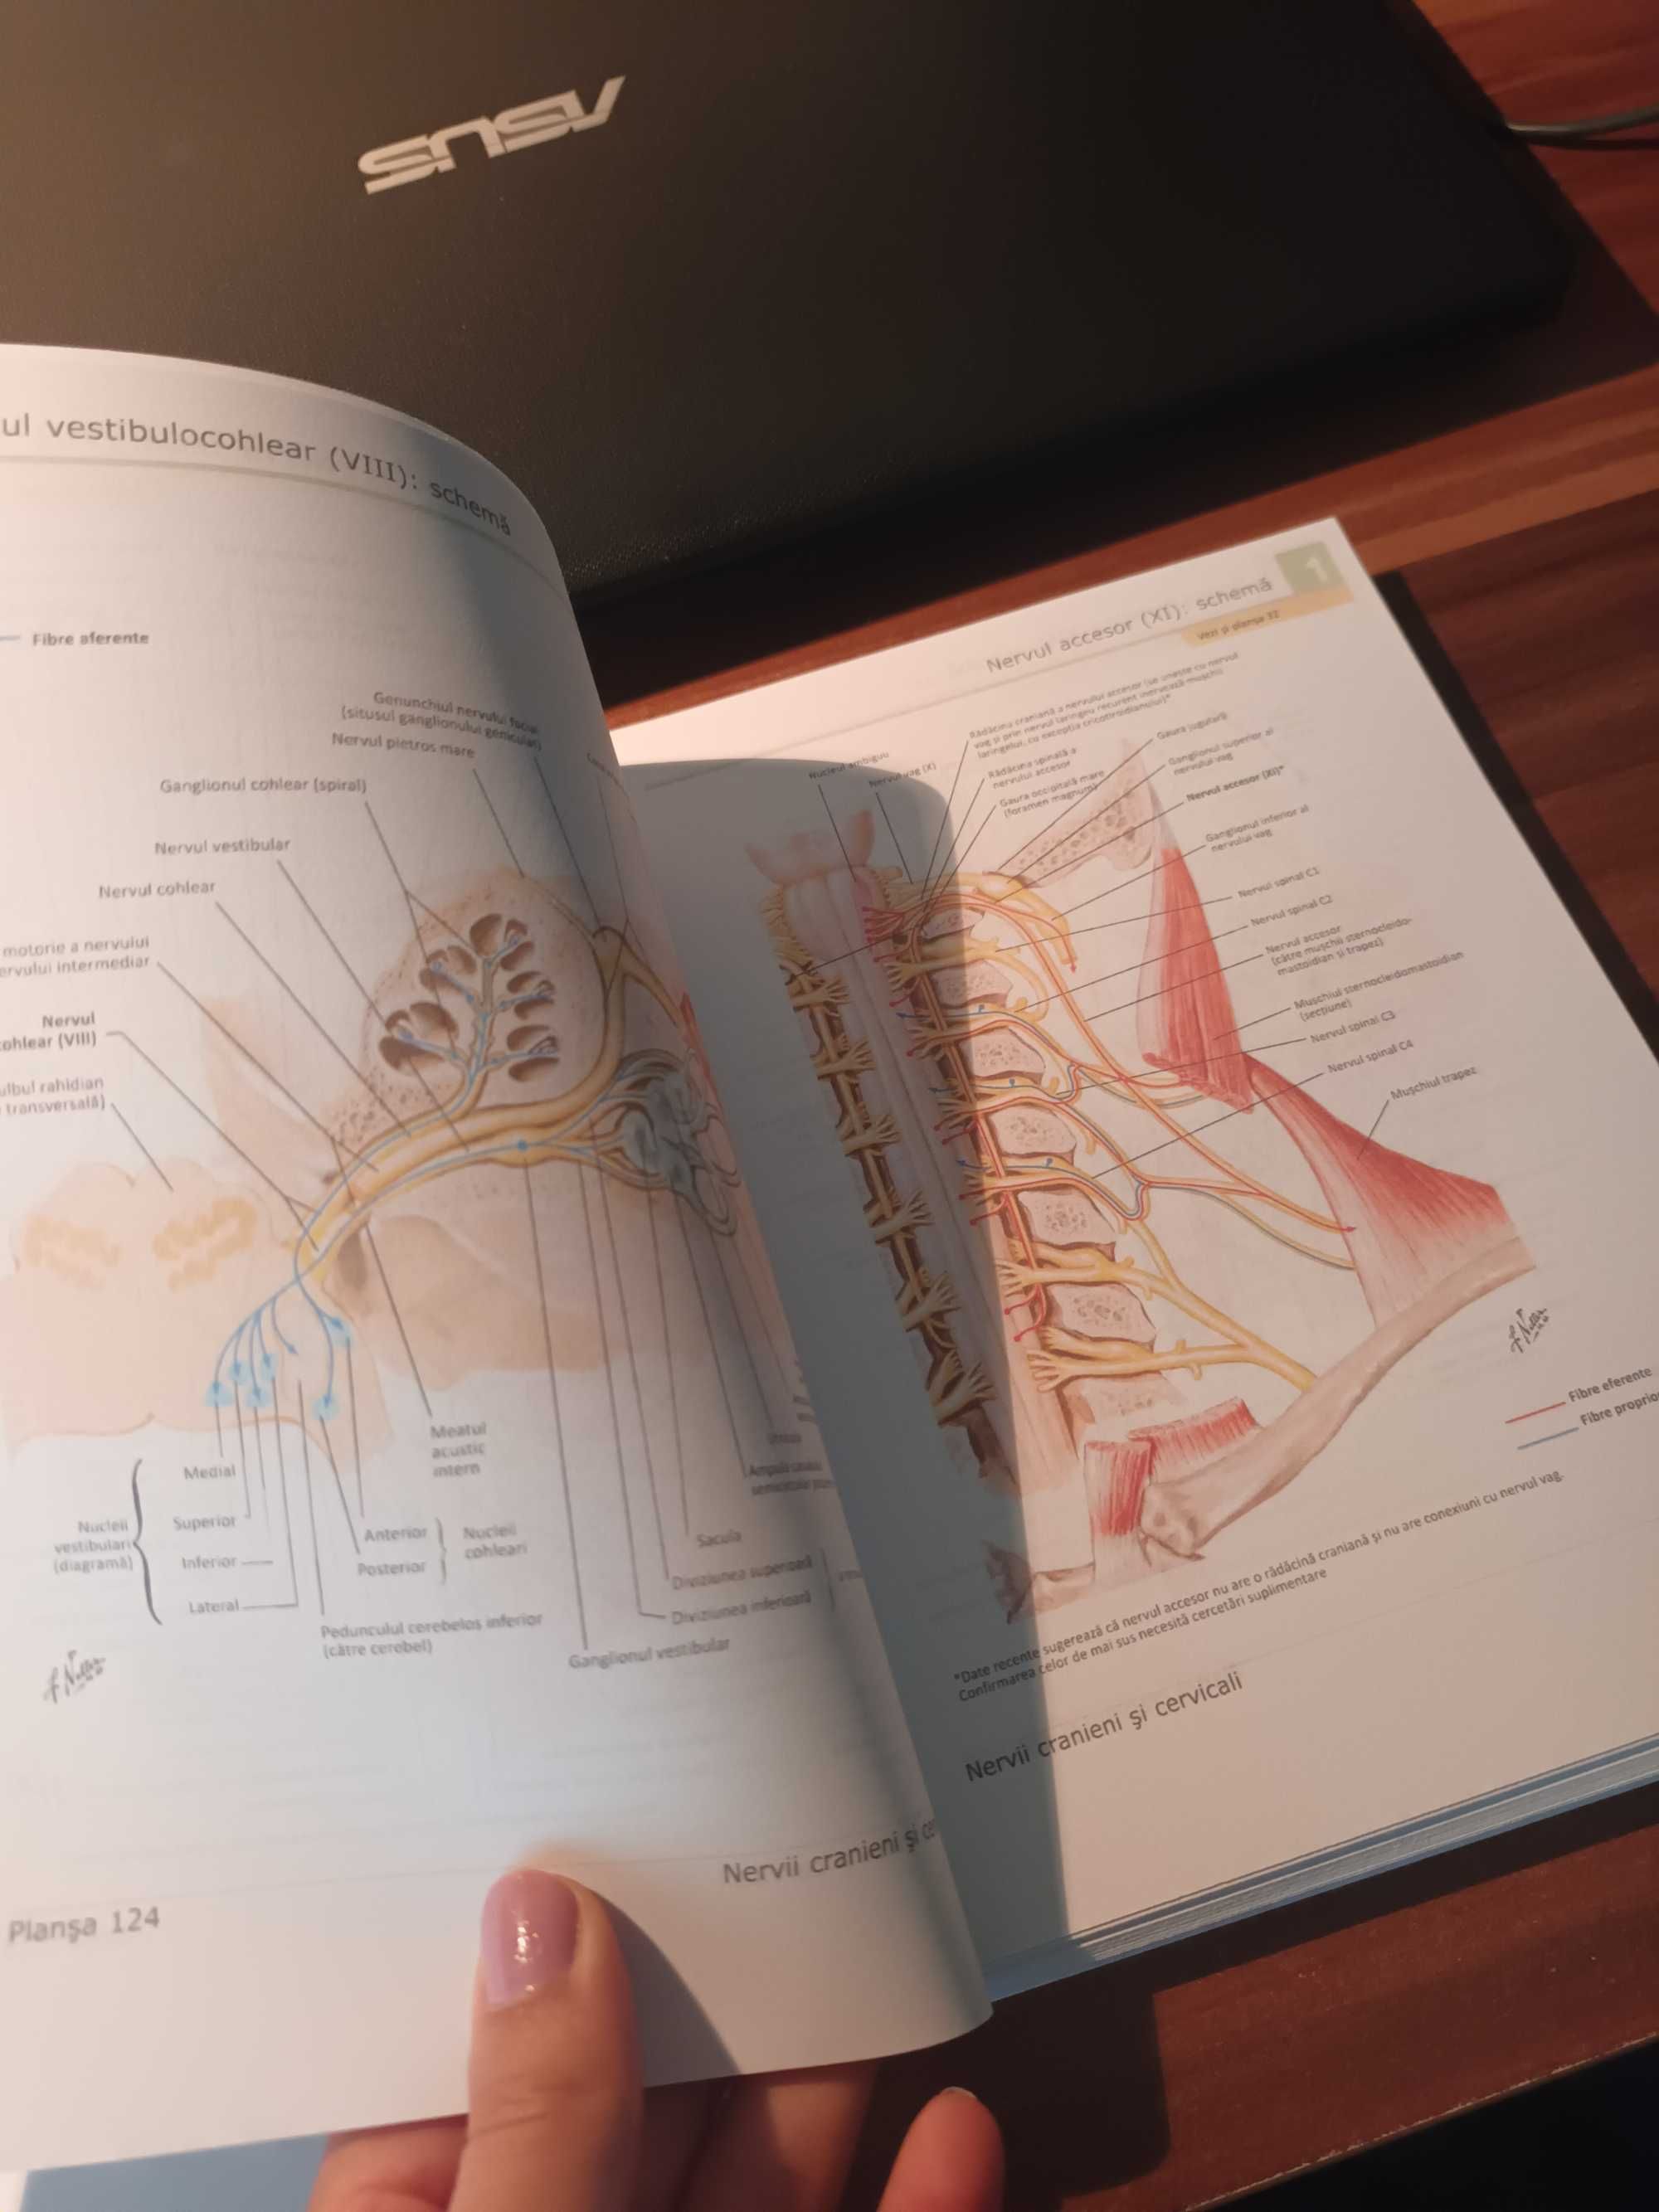 NETTER Atlas de anatomie